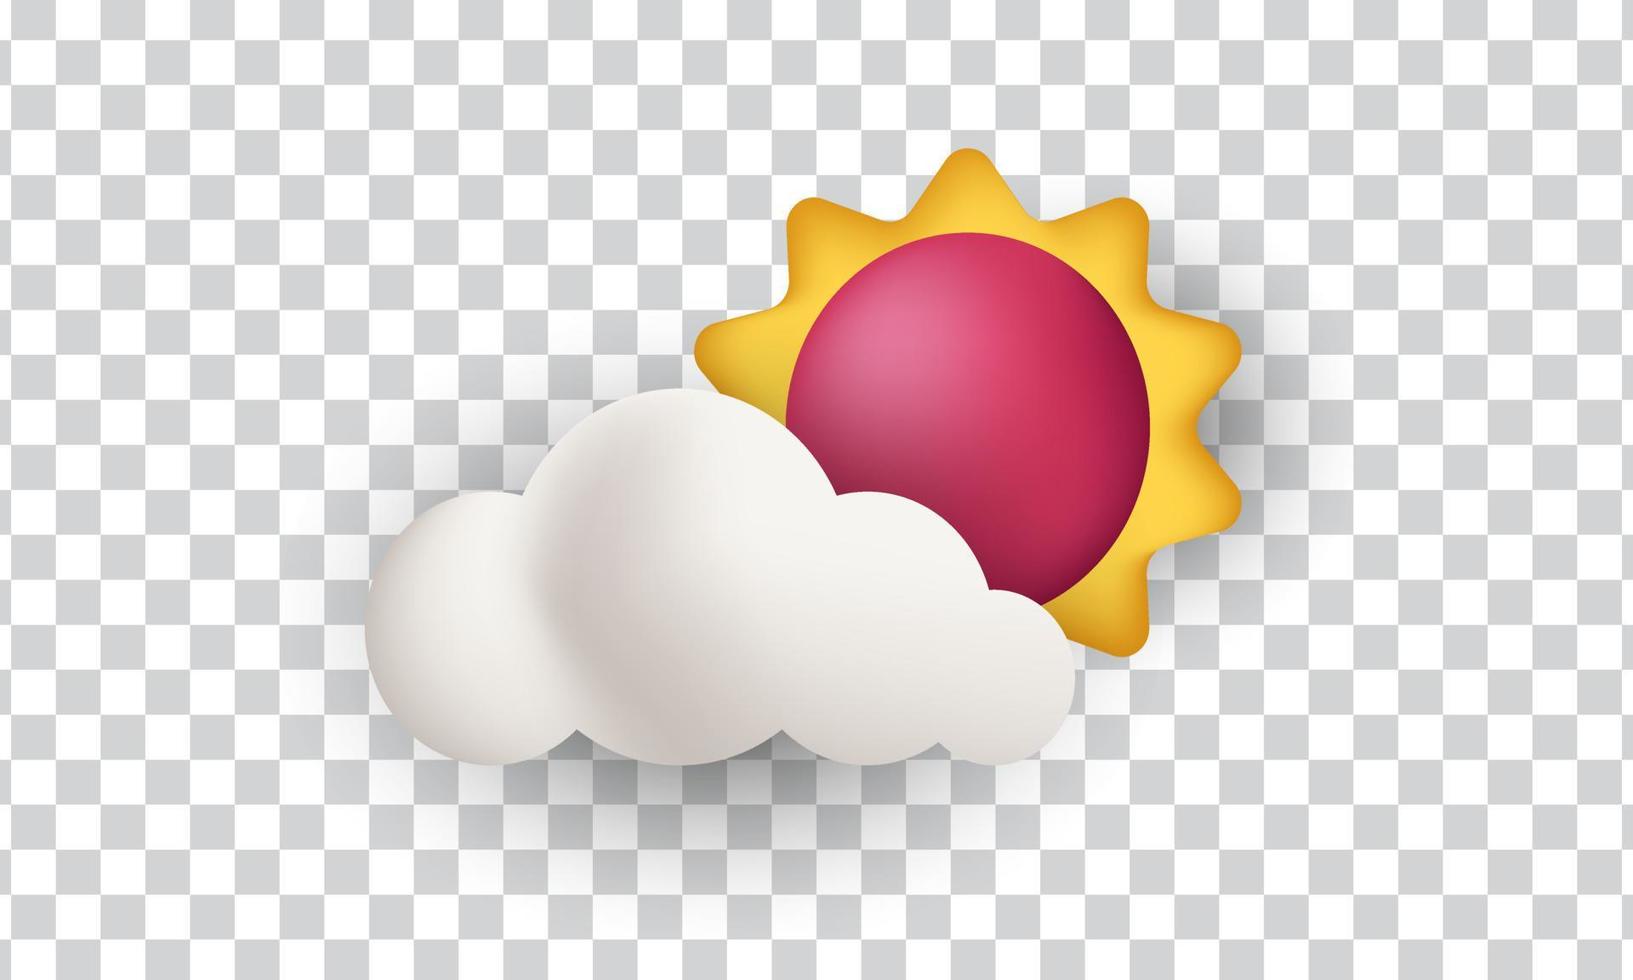 design exclusivo de ícone de conceito de sol e nuvem 3d isolado em vetor